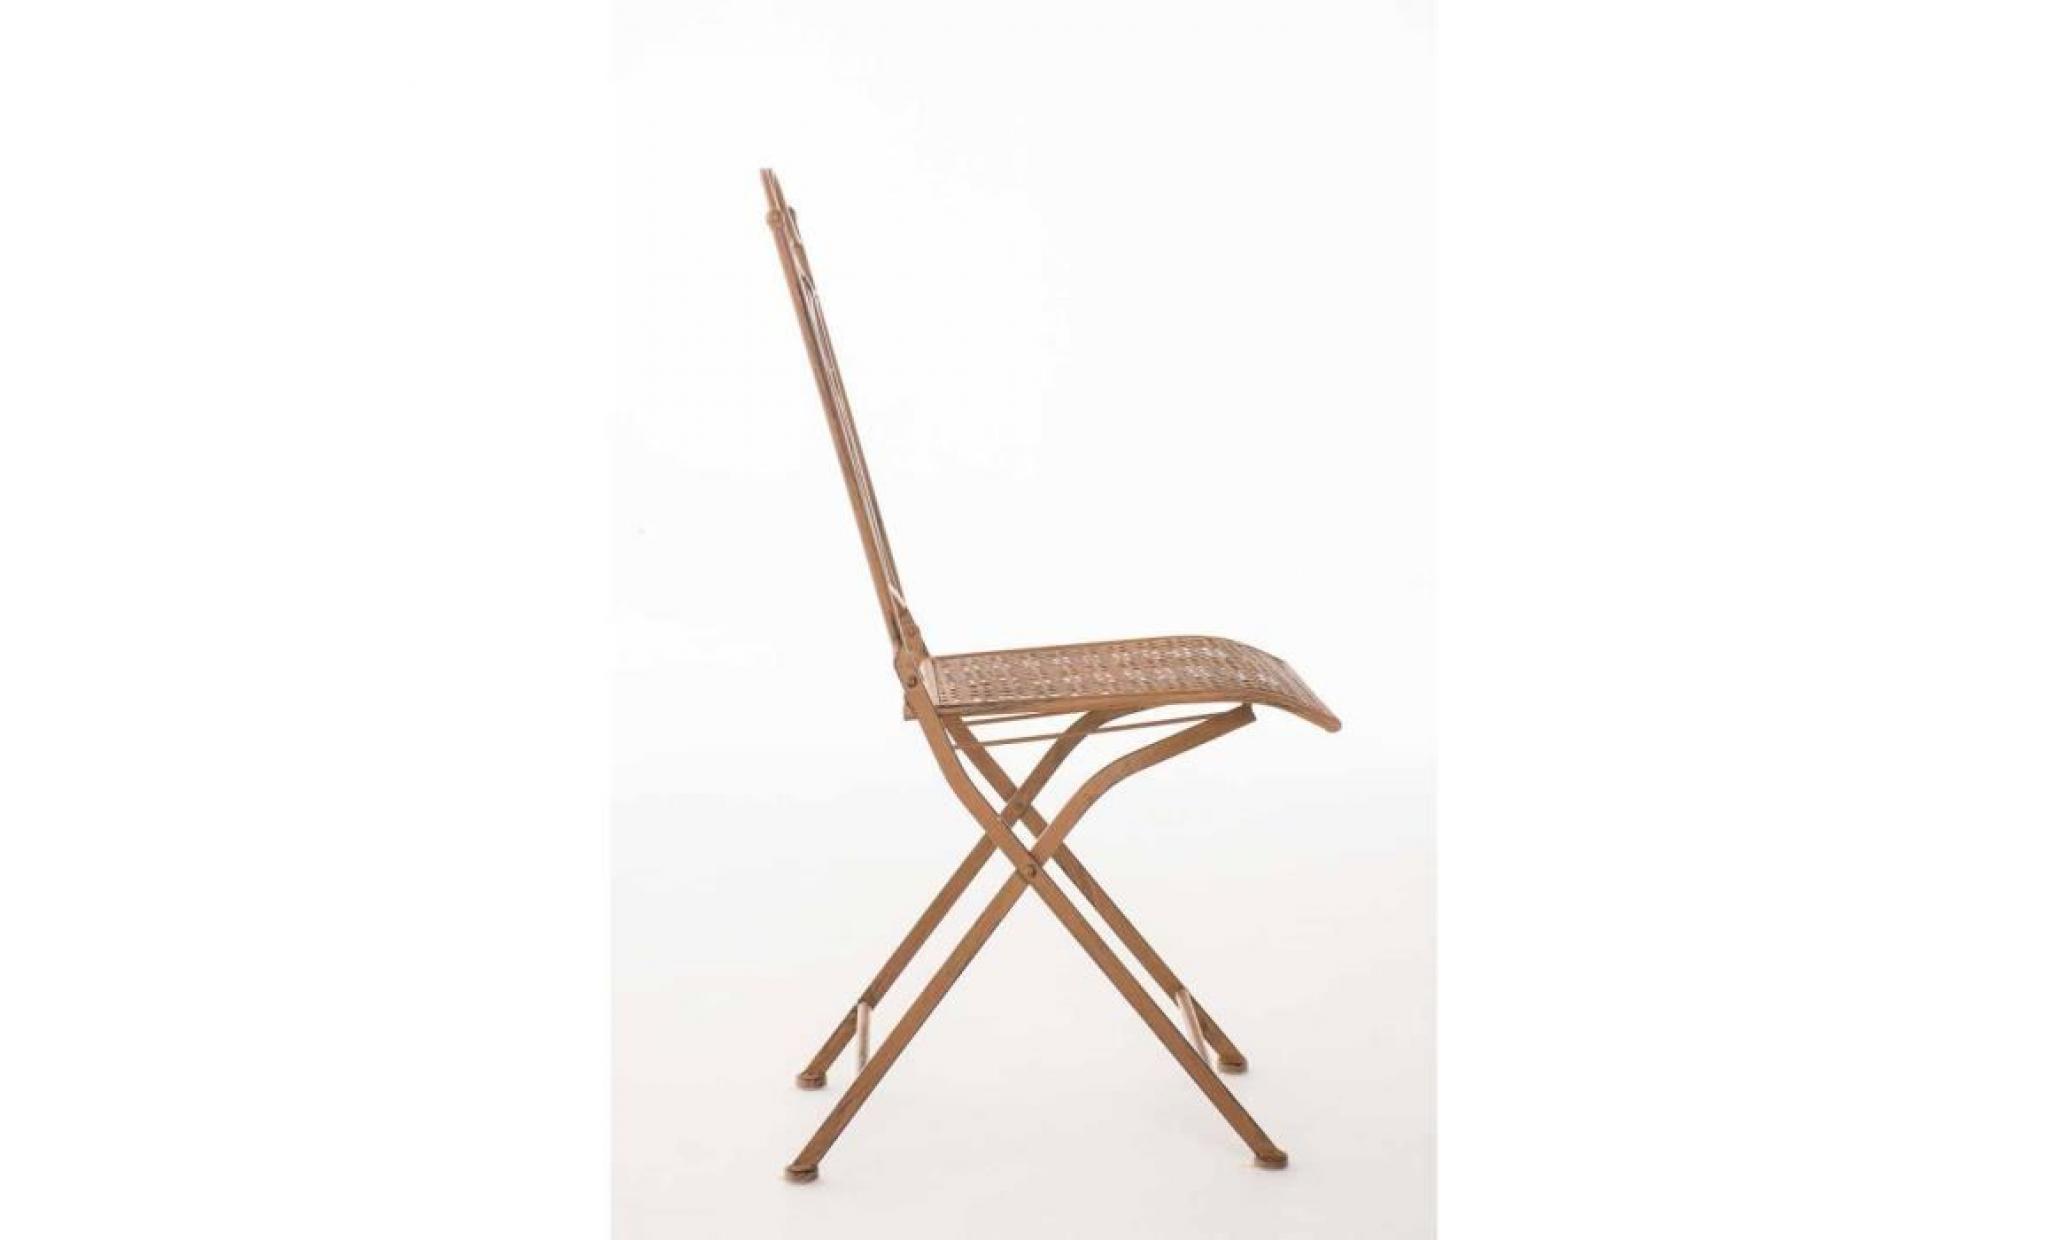 clp chaise nostalgique pliable lunis, chaise fer forgé, chaise pliante, chaise antique, 6 couleurs au choix 91 cm blanc antique pas cher